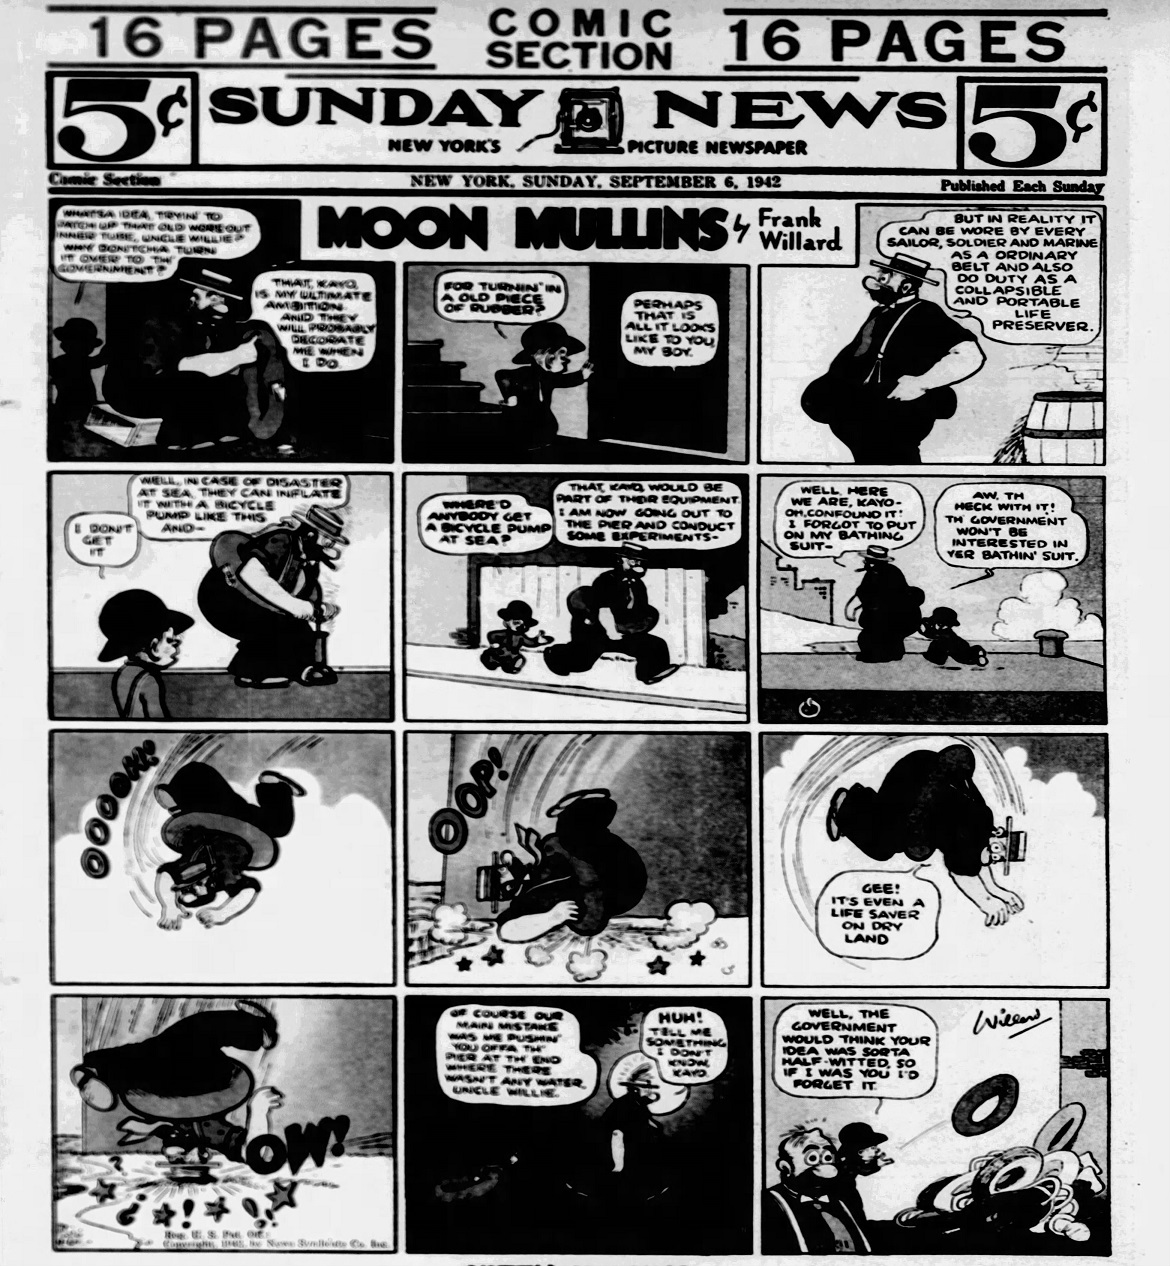 Daily_News_Sun__Sep_6__1942_(10).jpg